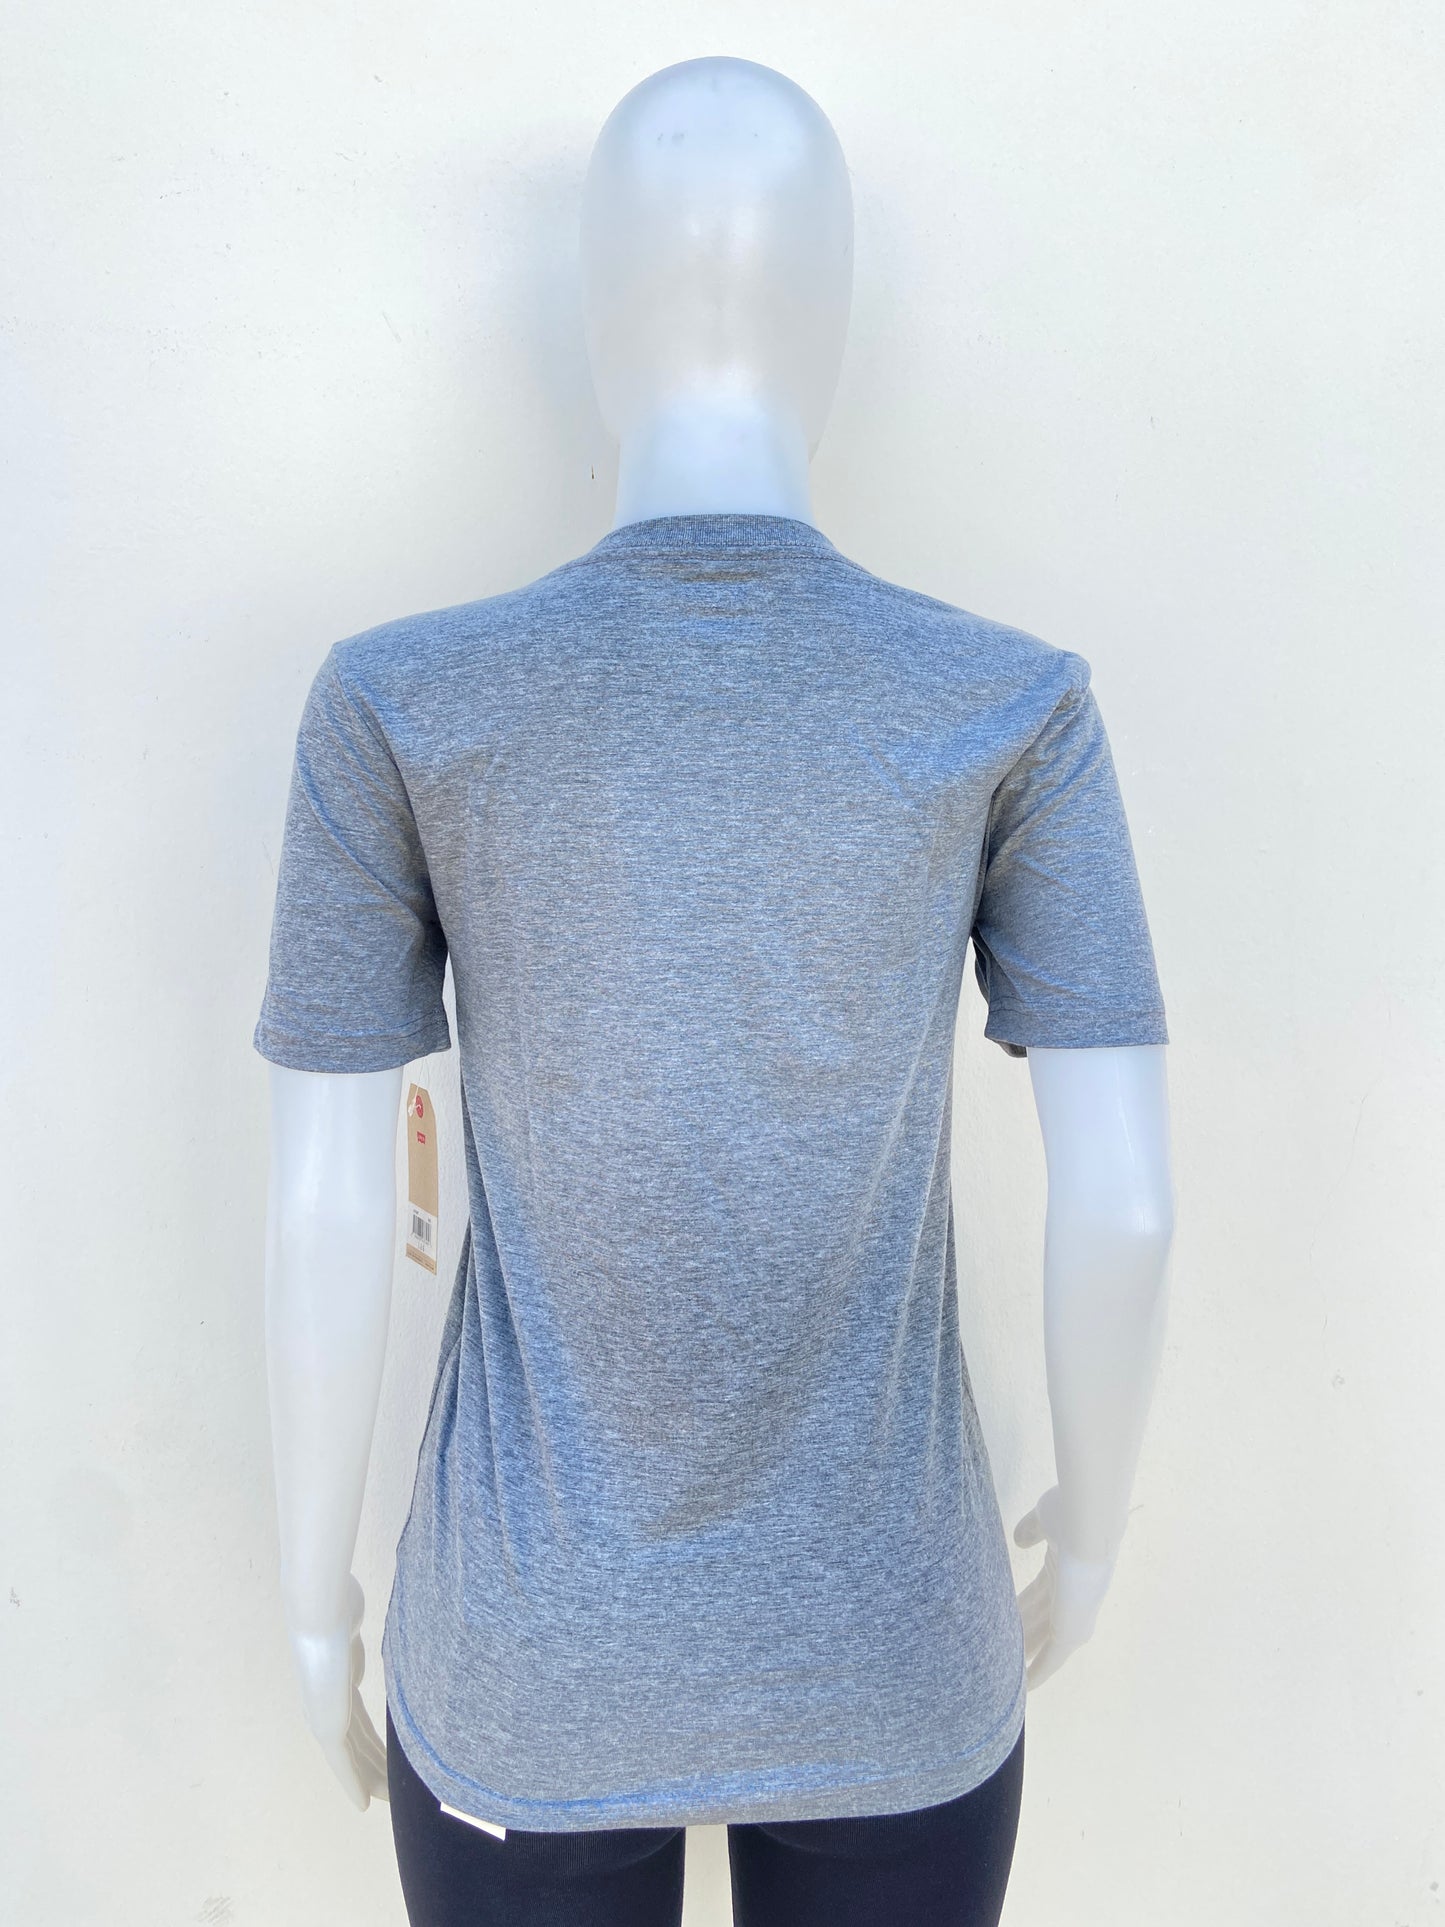 T-shirt Levi’s original gris con letras de la  marca en azul.